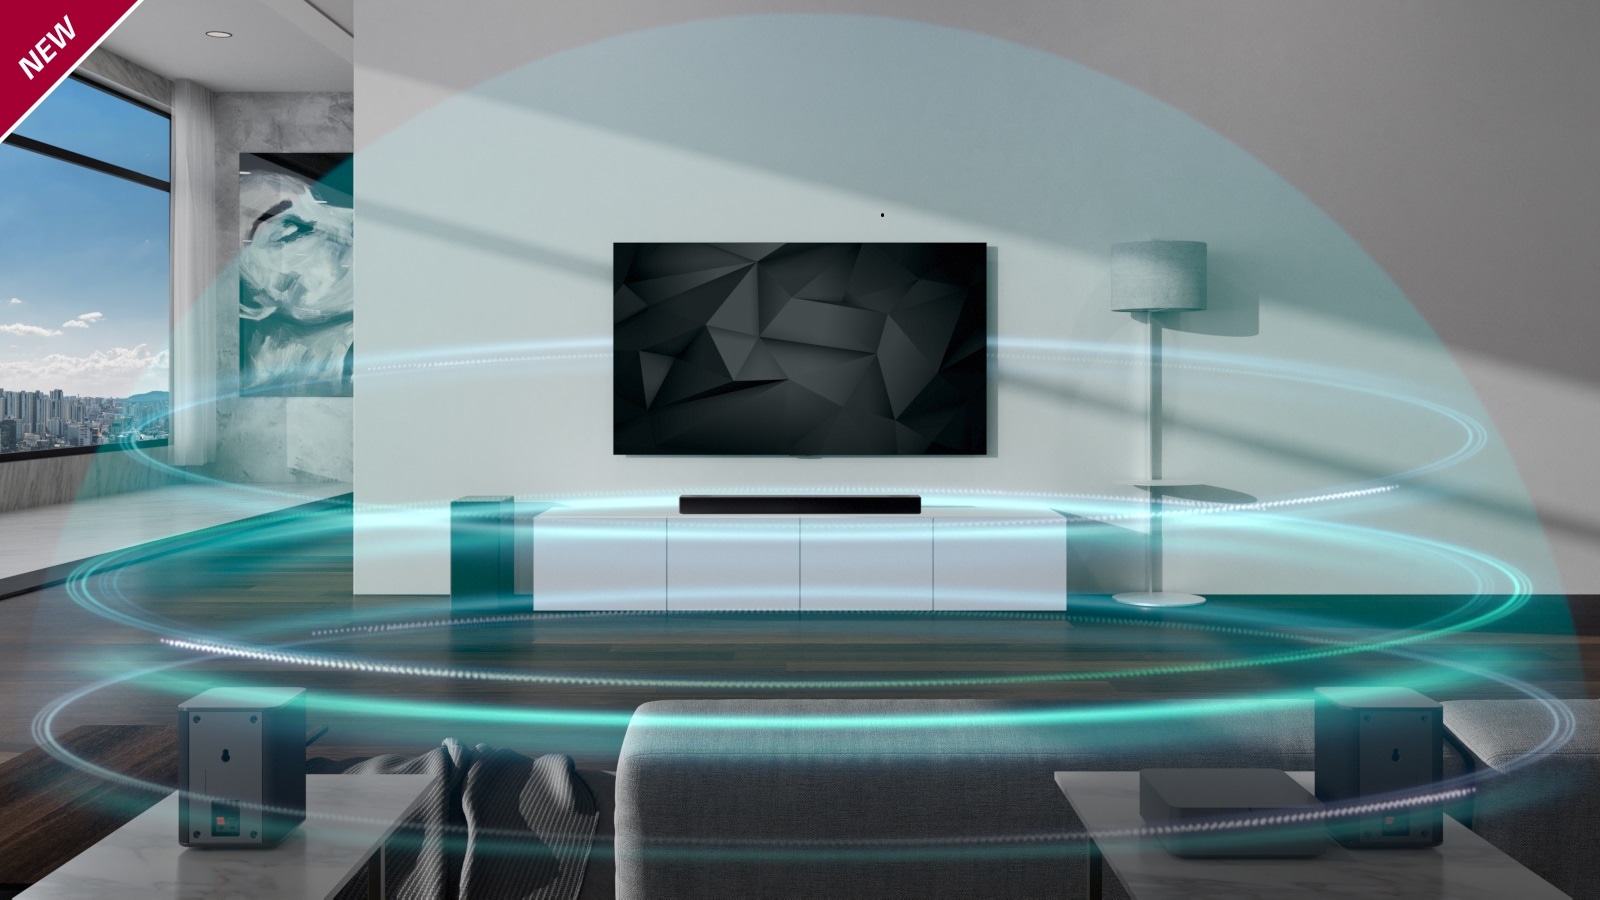 امواج صوتی گنبدی شکل سه لایه و آبی رنگ، ساندبار و تلویزیون را در اتاق نشیمن در برمی گیرند. علامت «جدید» (NEW) در گوشه بالا و سمت چپ نشان داده شده است.